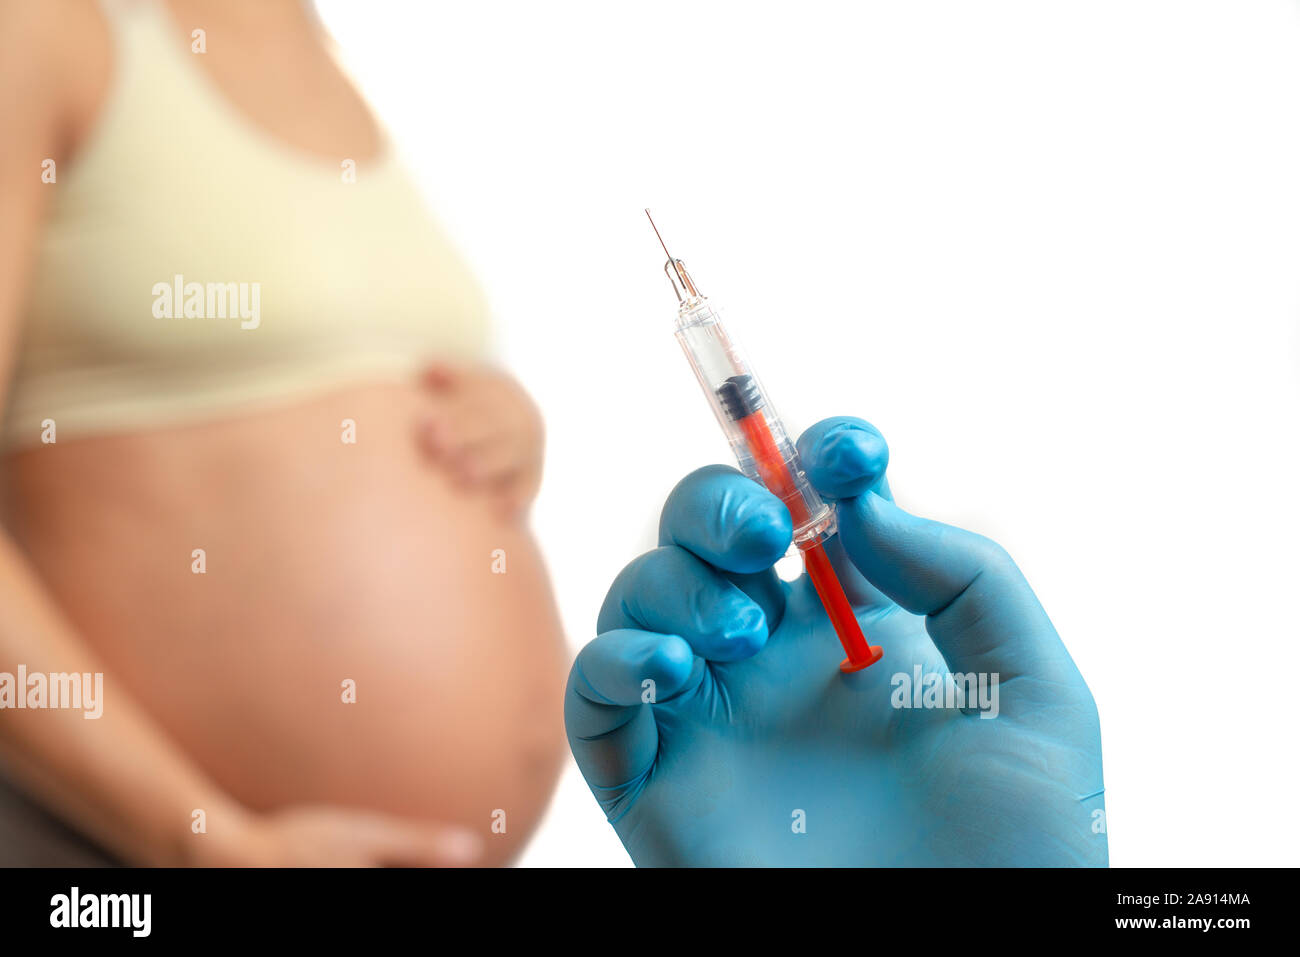 Arzt hand vorbereiten zum Einspritzen von Antikoagulanzien in schwangere Frau Bauch, auf weißem Hintergrund Stockfoto